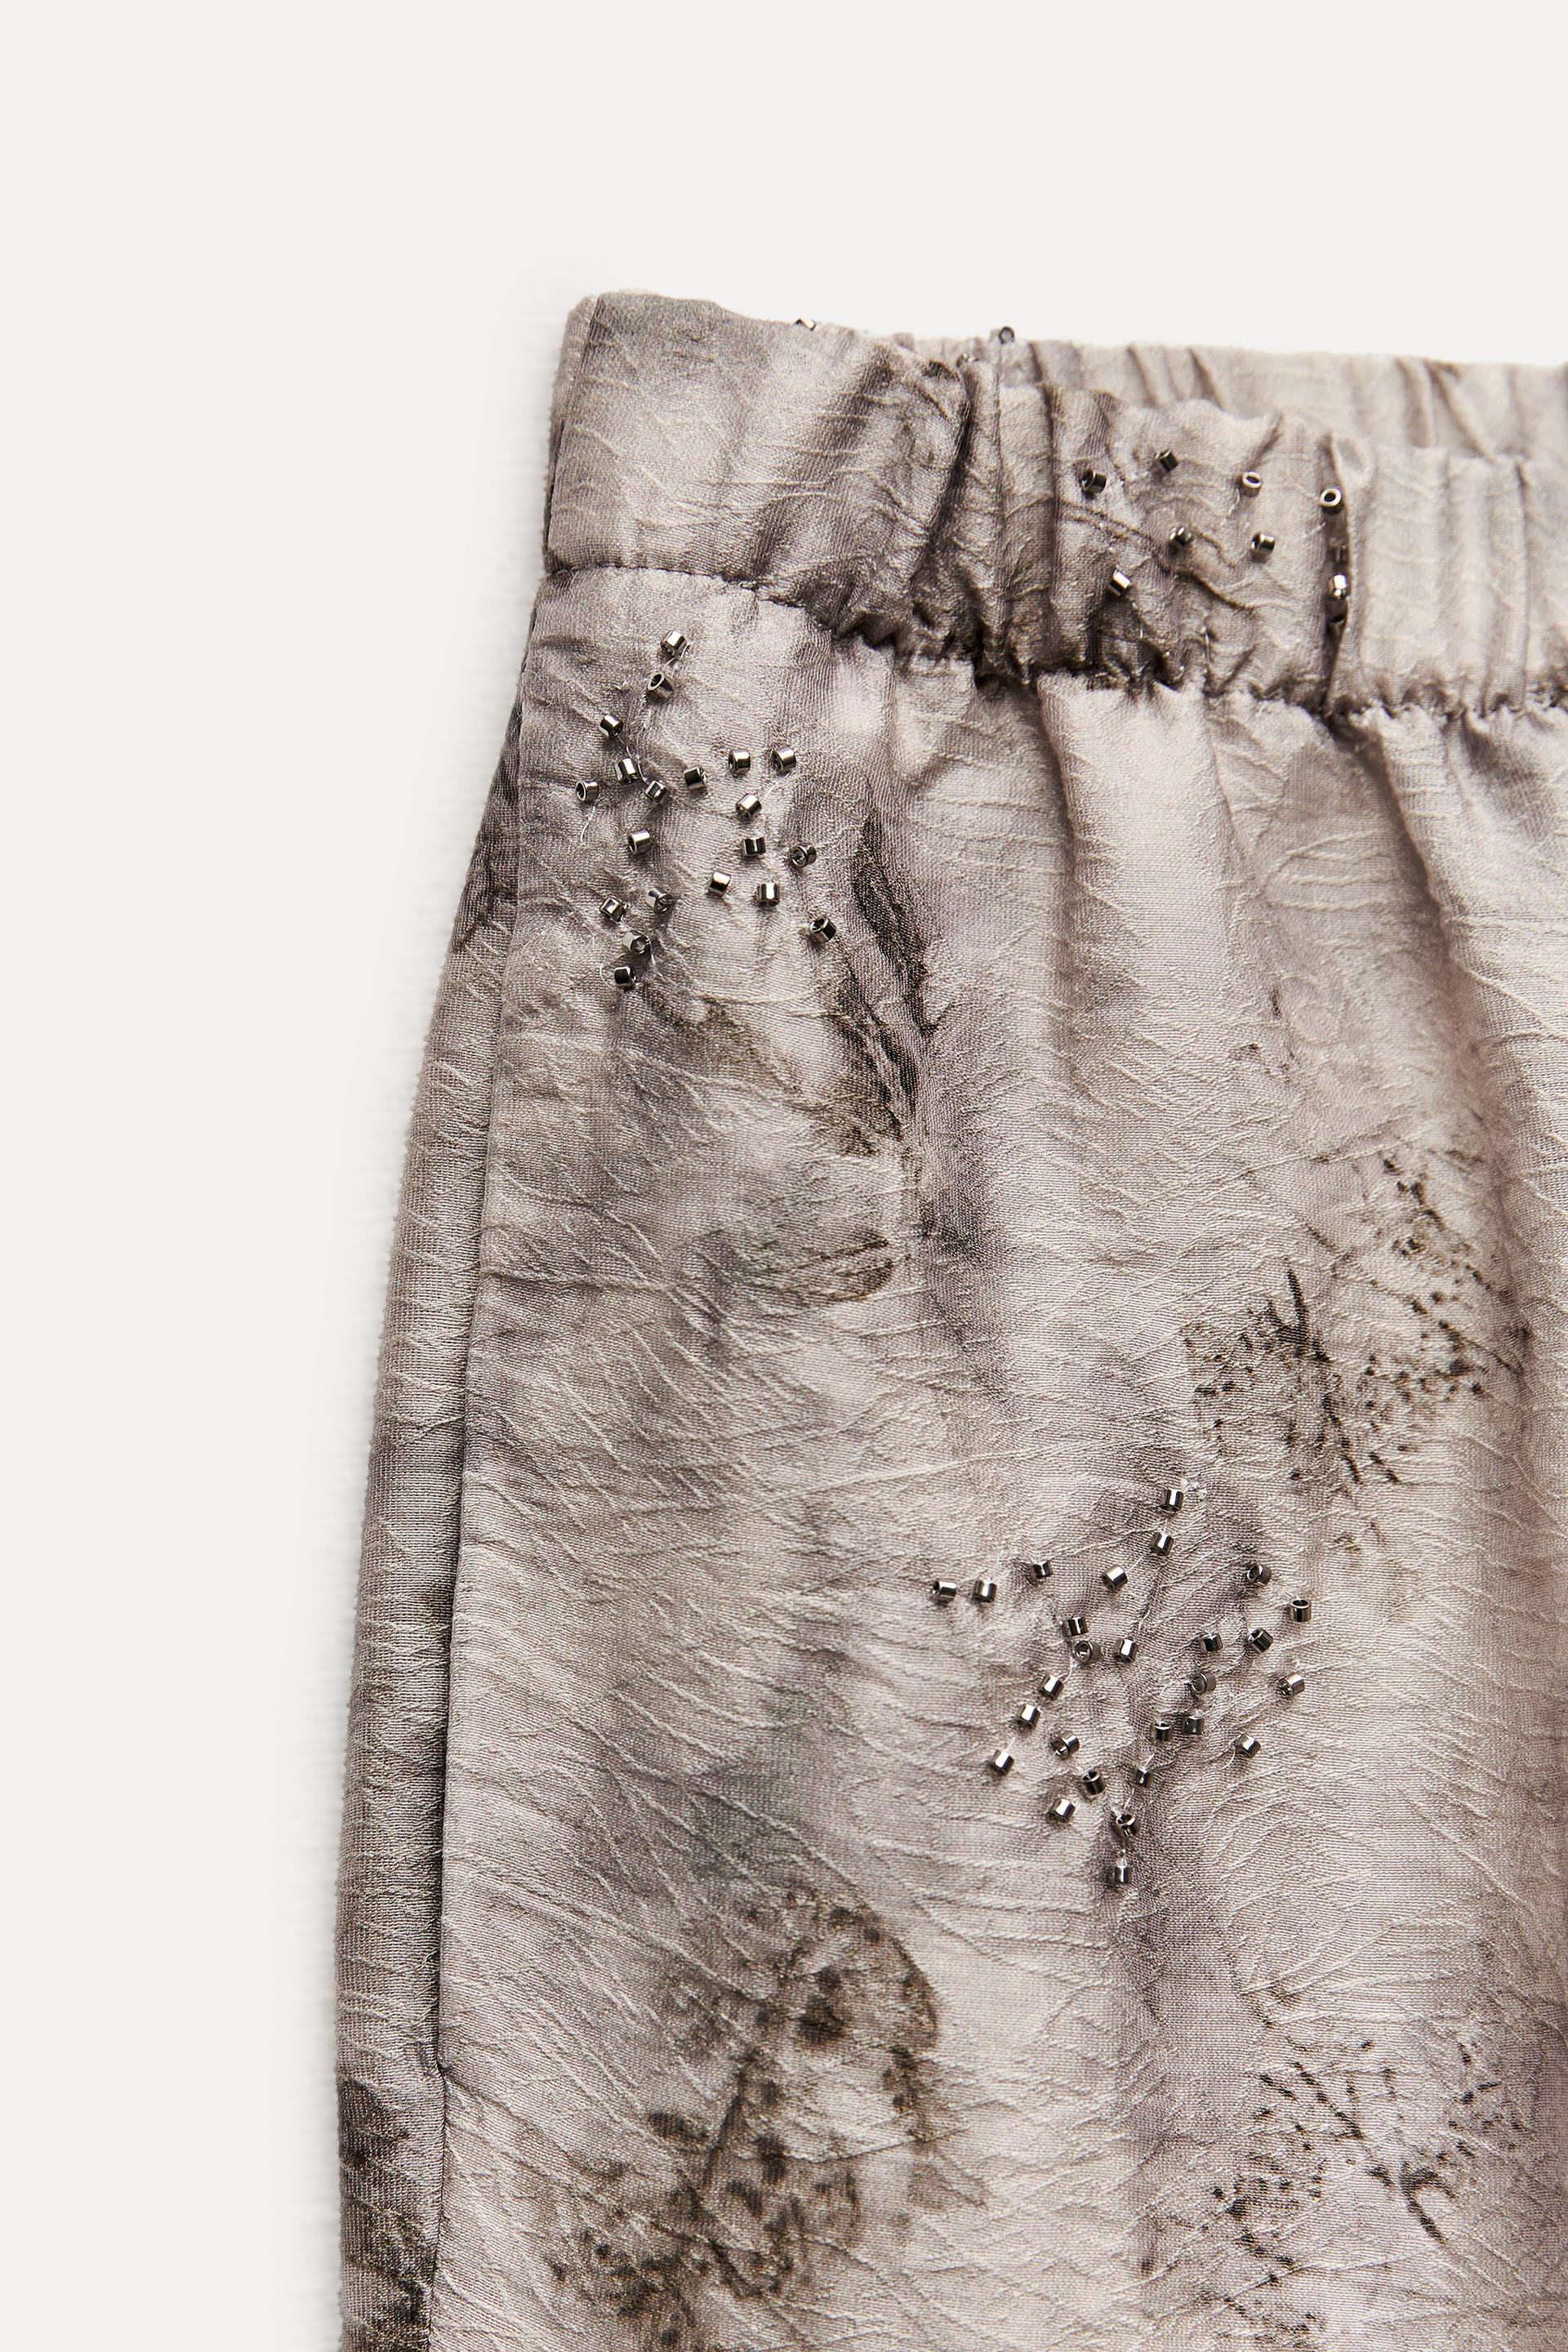 Combinando los pantalones bordados de Zara. Ref. 2731/046 💘 #zarawoma